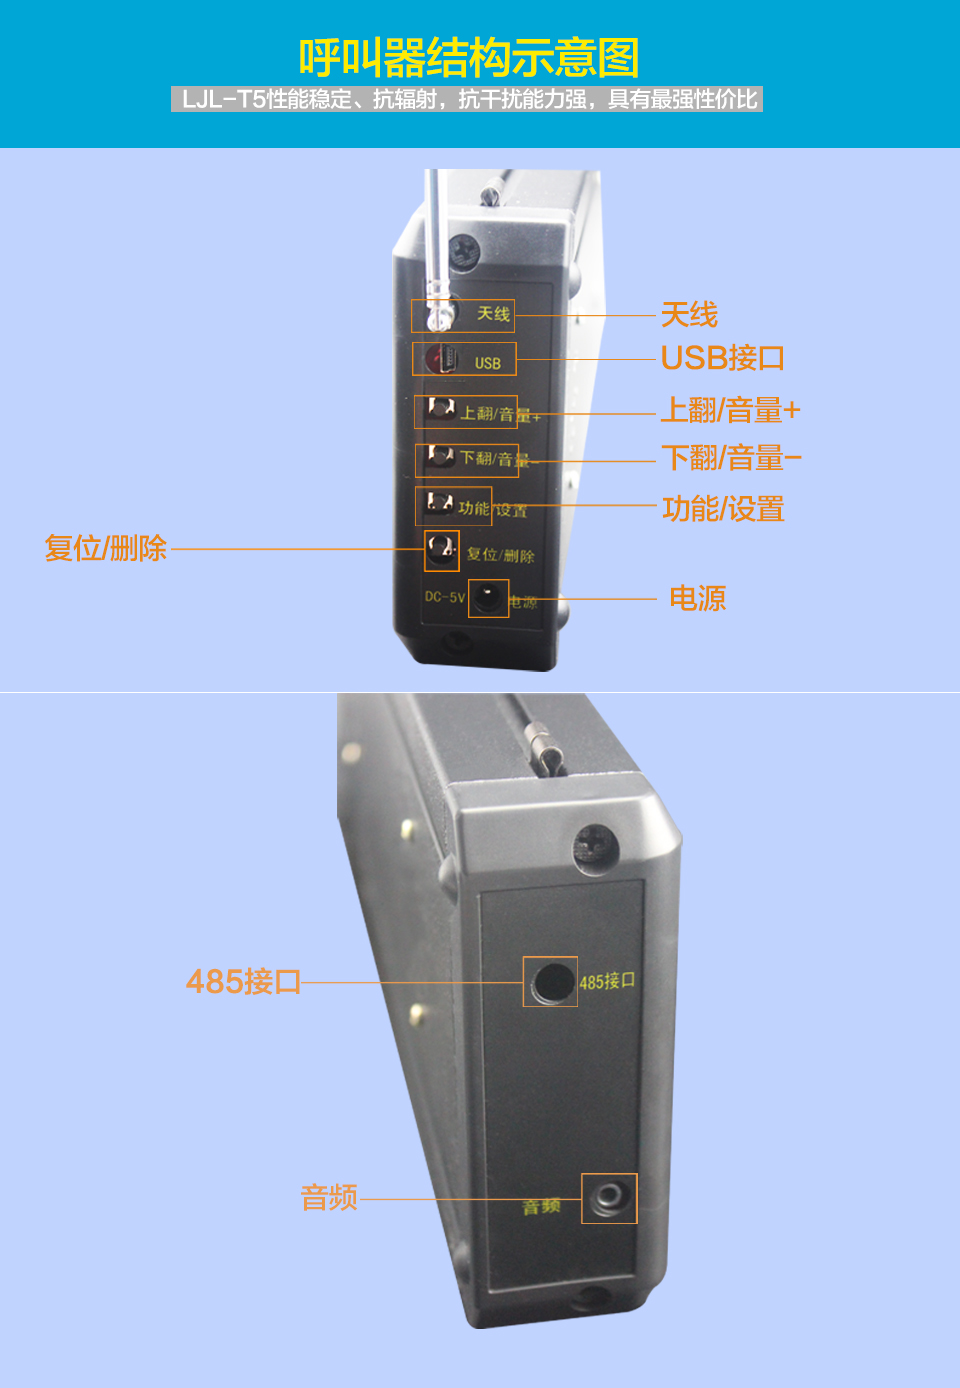 施工电梯呼叫器LJL-T5型主机 铝合金外壳 防爆抗压